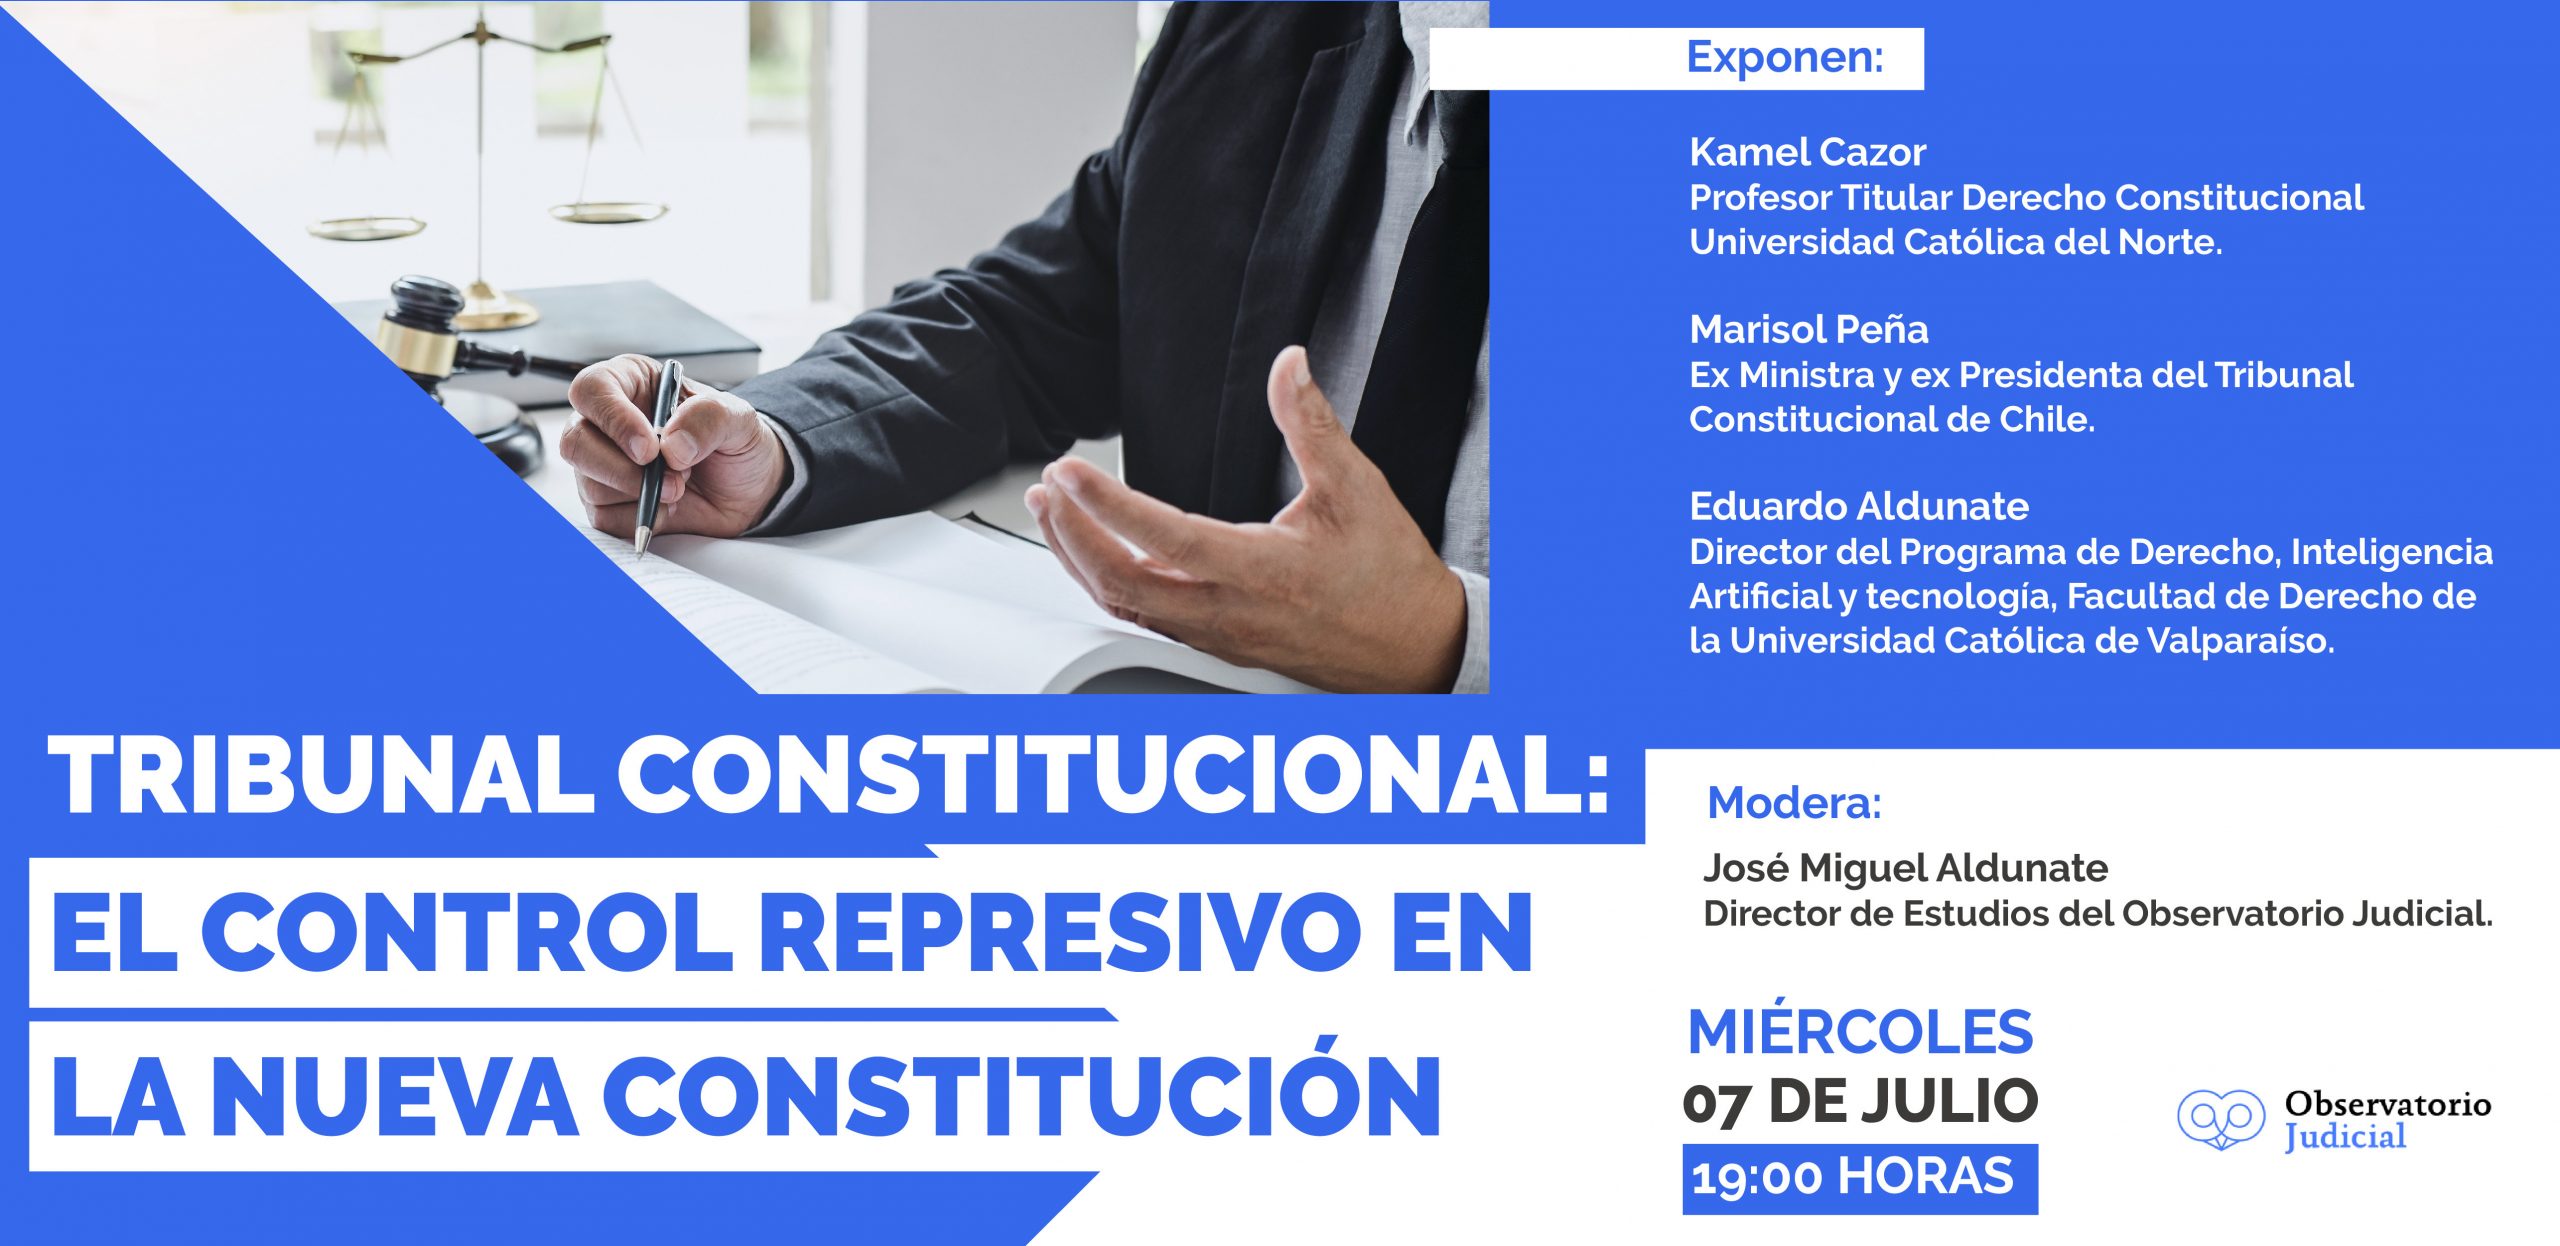 Tribunal Constitucional: El control represivo en la nueva Constitución.